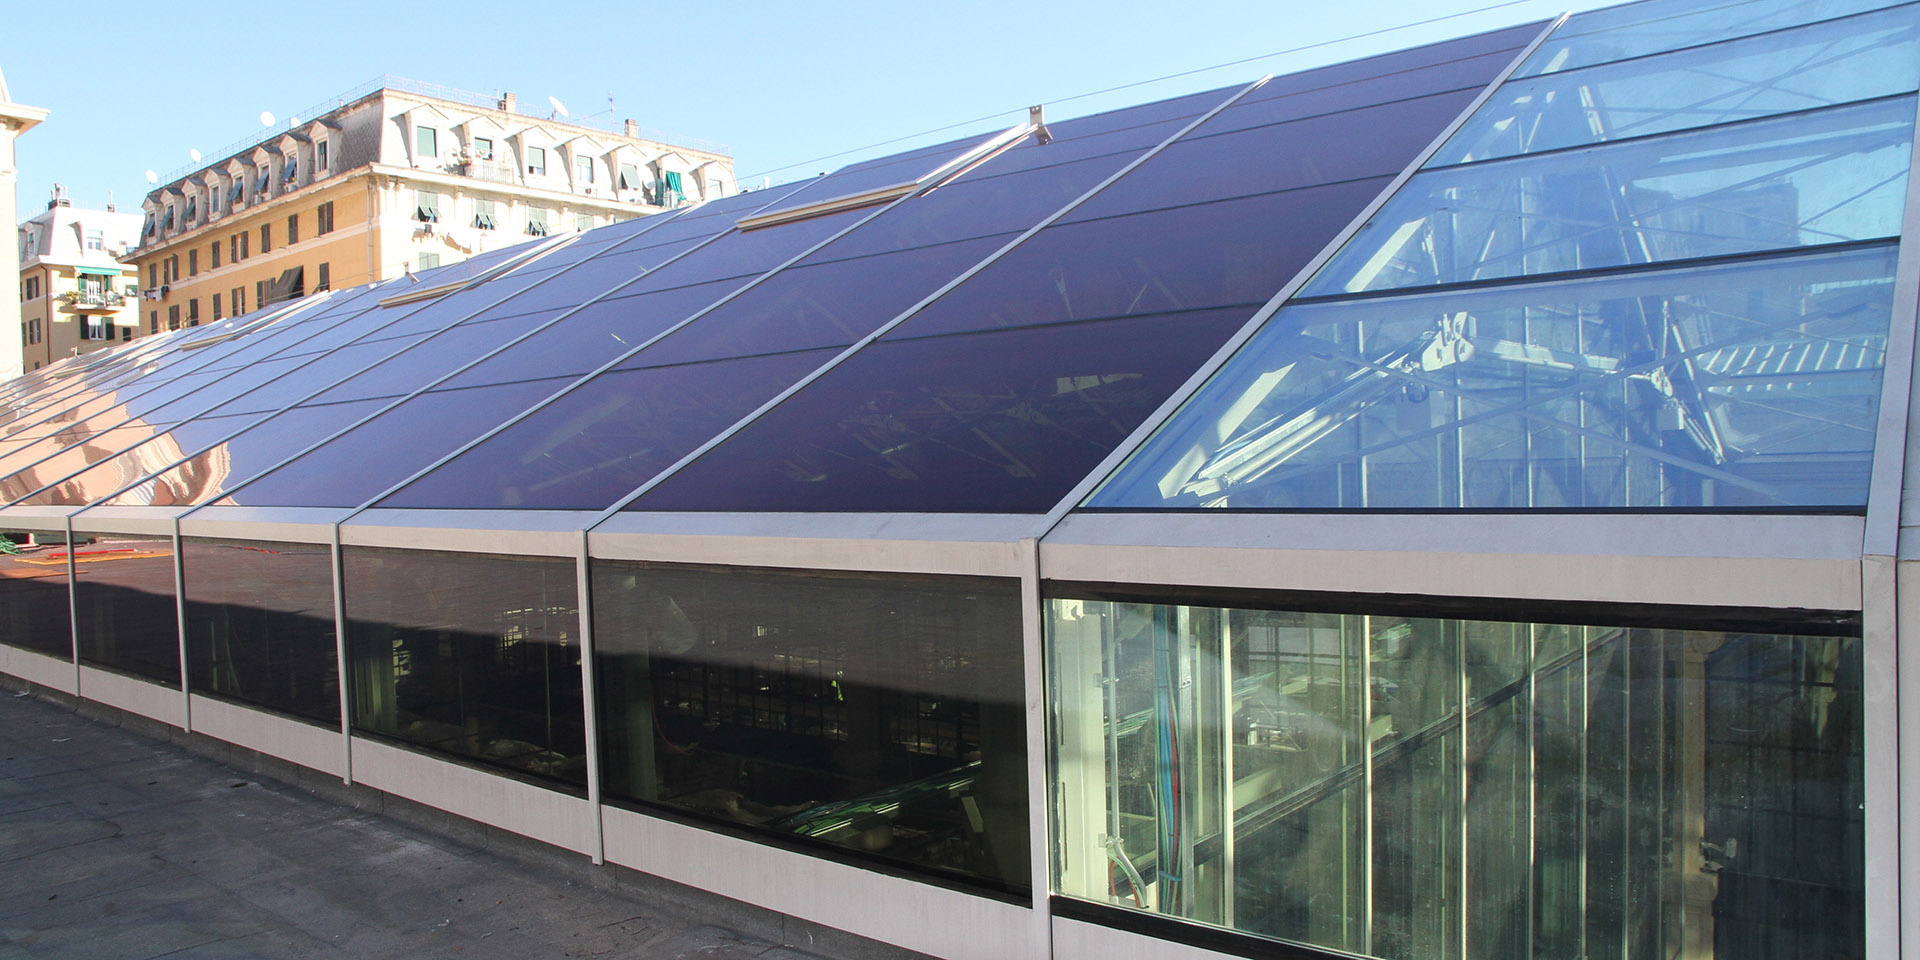 Efficienza energetica & schermature solari passive: eliminare l'effetto serra negli edifici